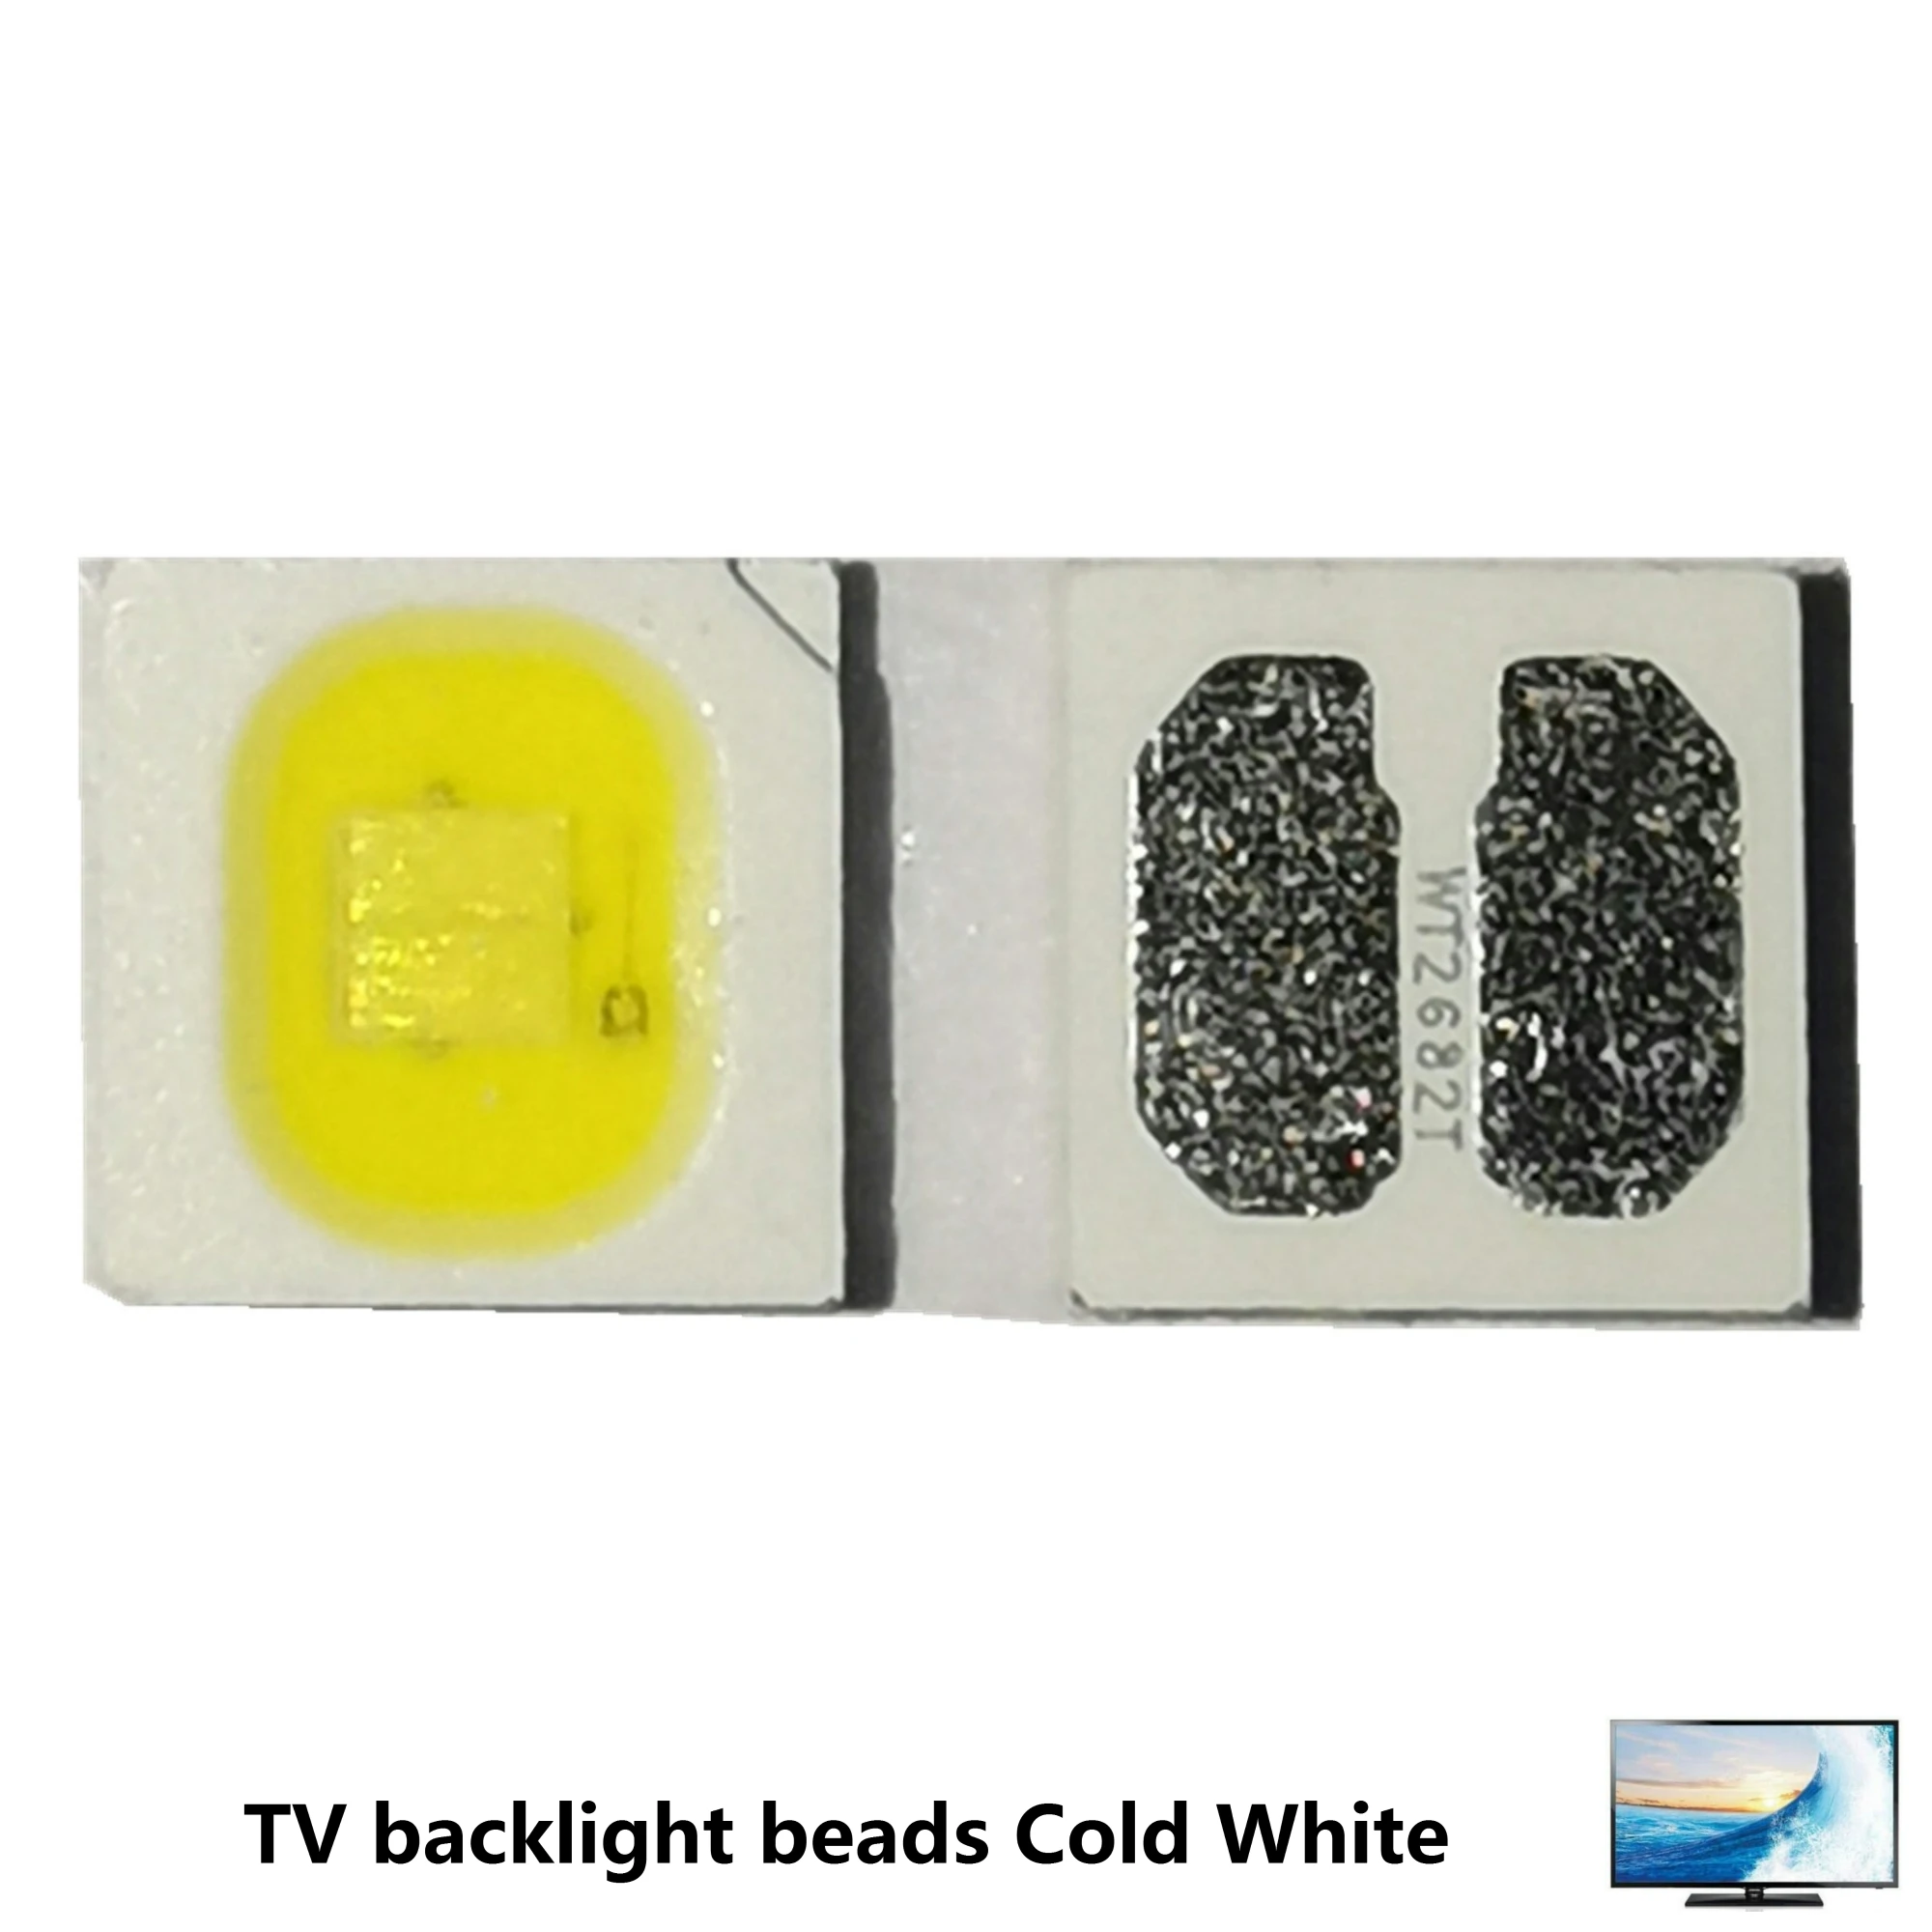 1000pcs LED Backlight High Power LED 2W 3030 3V-3.6v Cool white 240 LM TV Application 3030 smd led diode